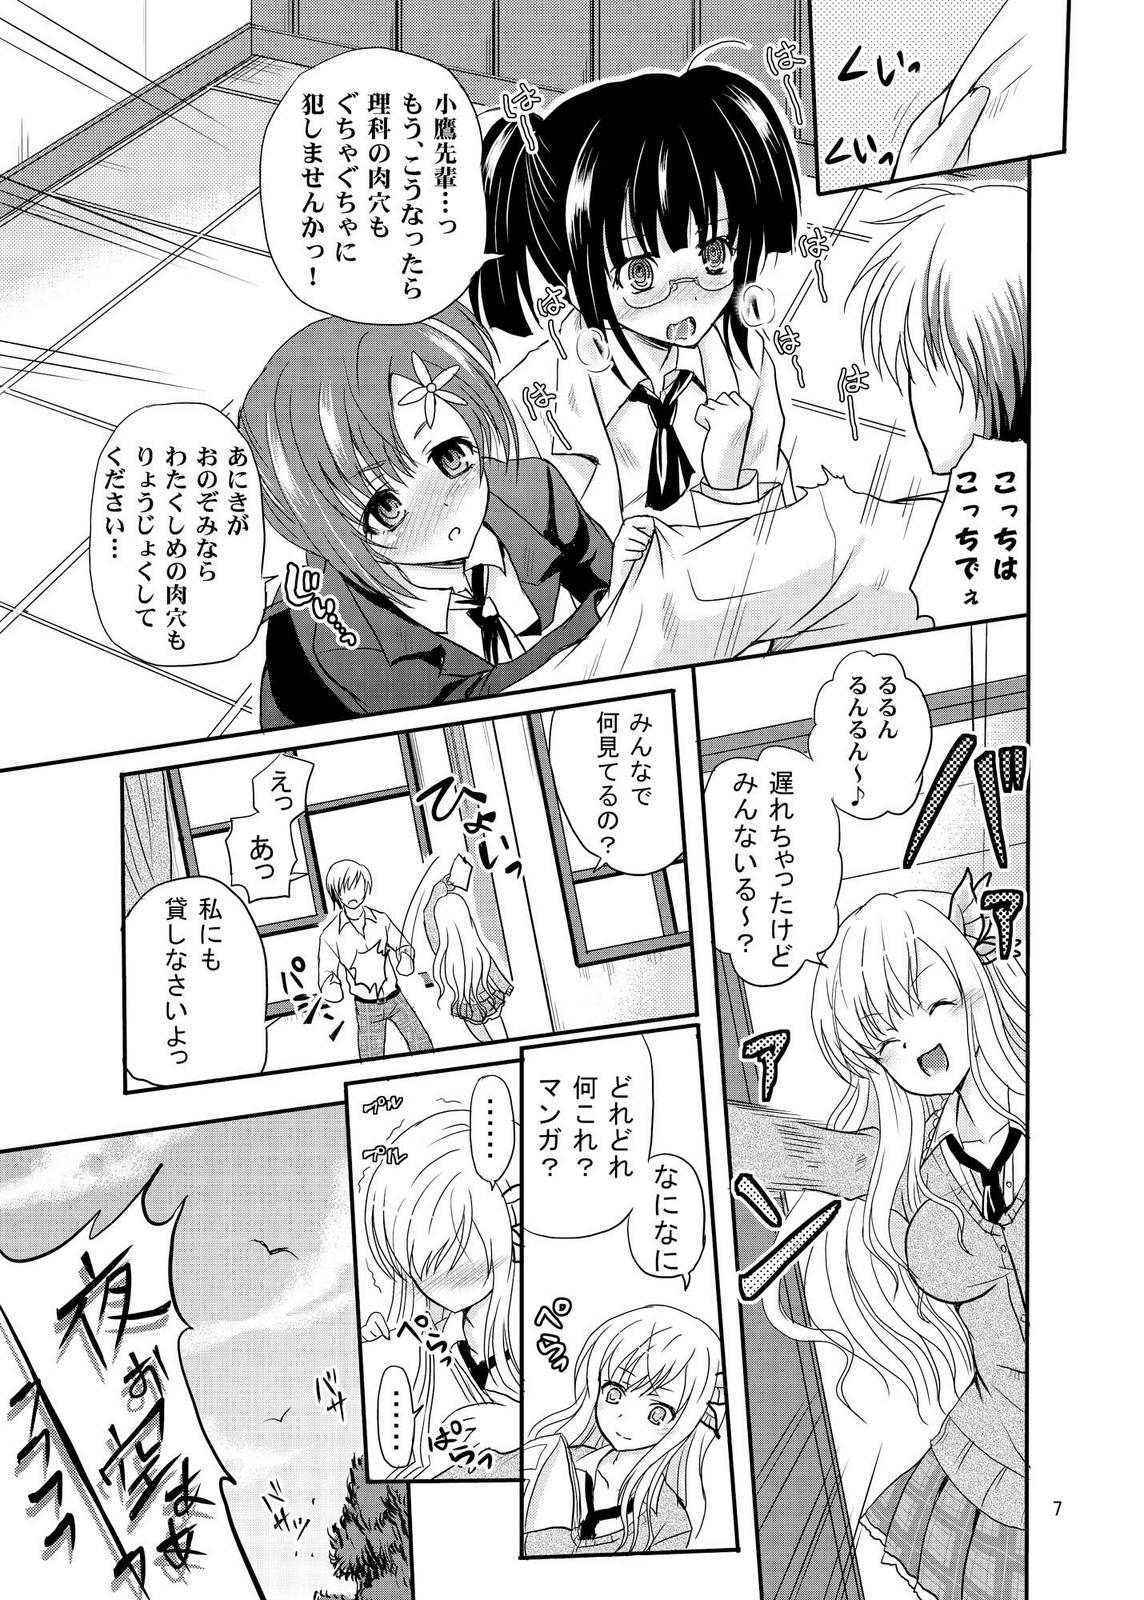 Buceta ARCANUMS 5 Niku - Boku wa tomodachi ga sukunai Sexcams - Page 7